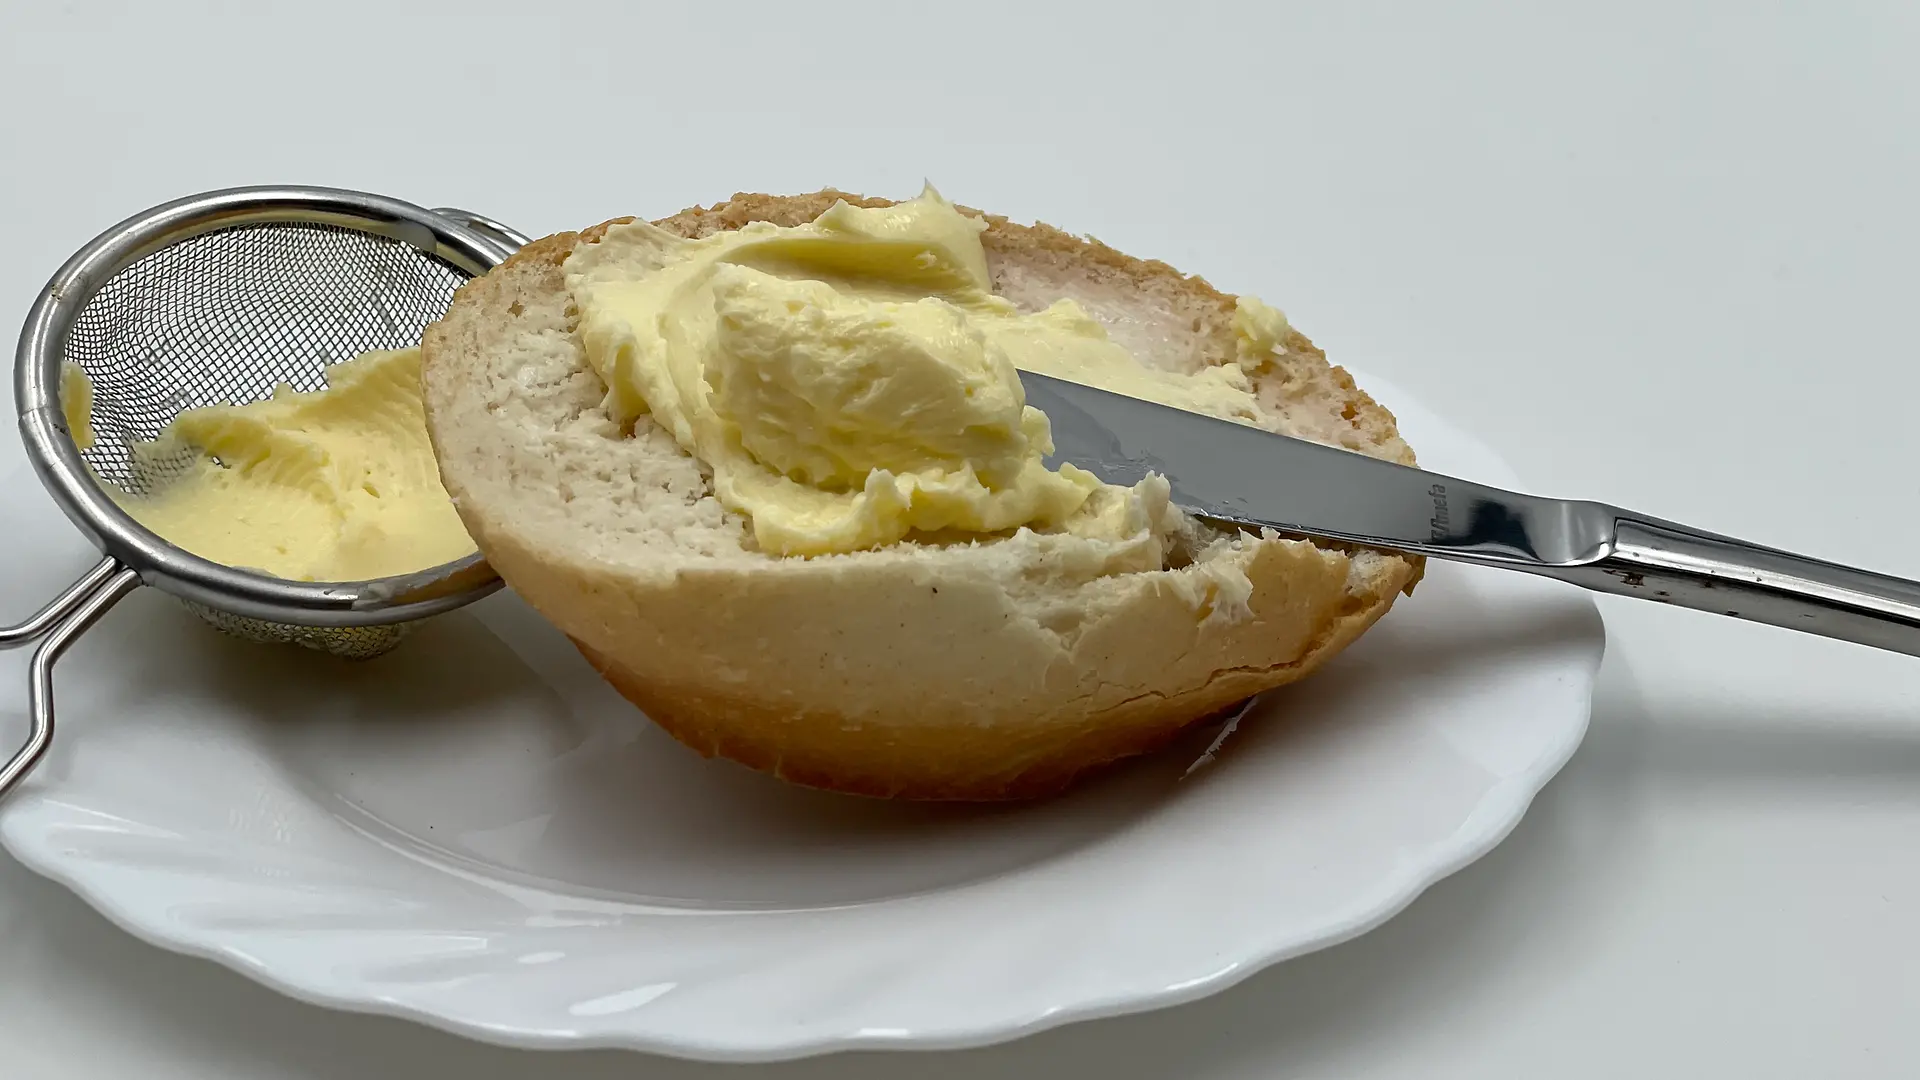 Ein halbes Brötchen mit Messer und Butter auf einem weißen Teller neben einem kleinen Sieb mit Butter